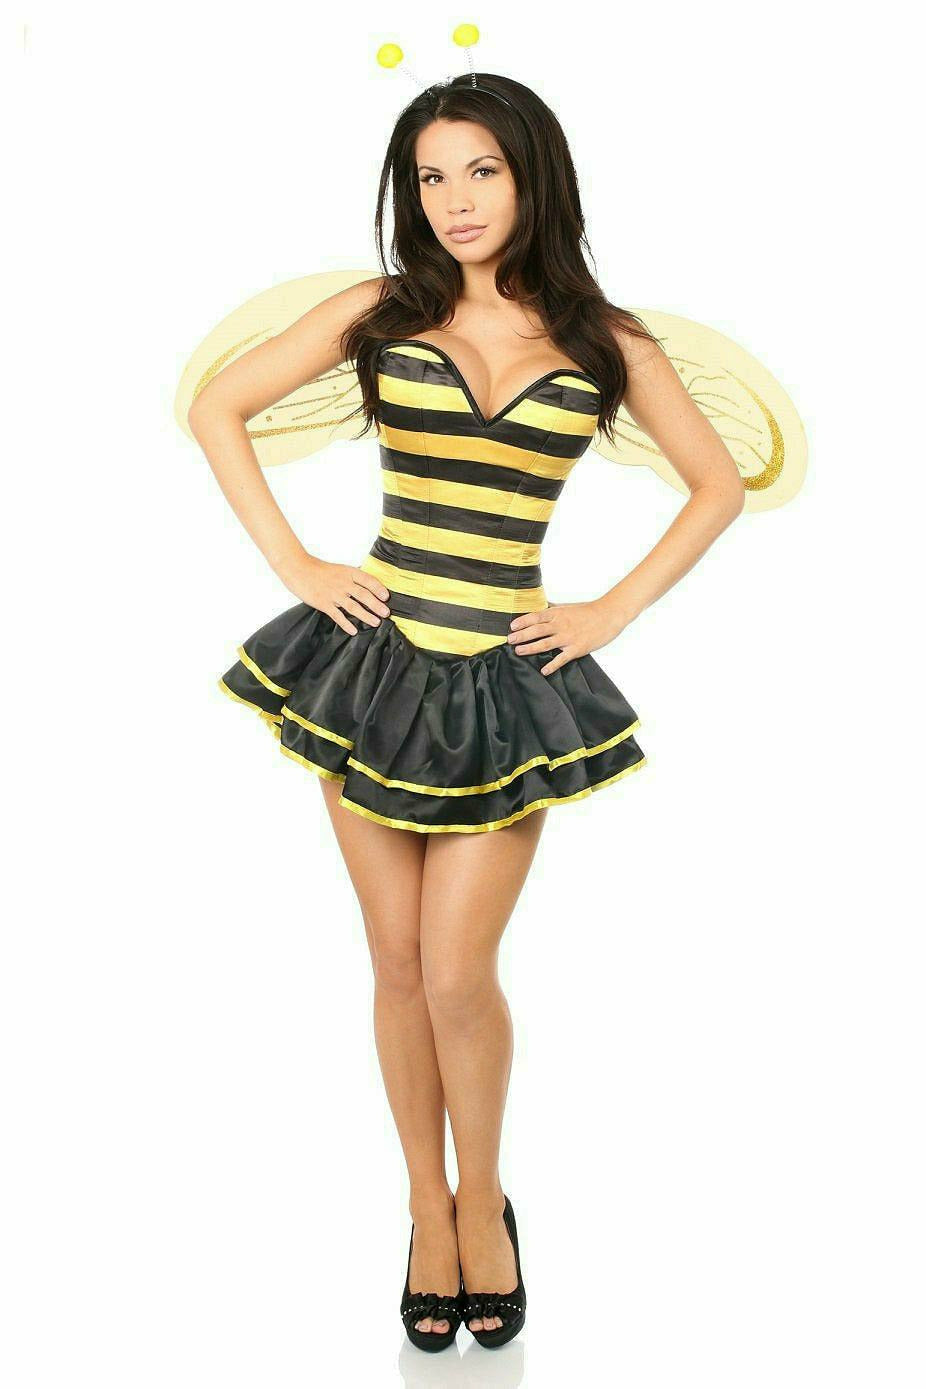 Top Drawer Premium Queen Bee Corset Costume - Daisy Corsets